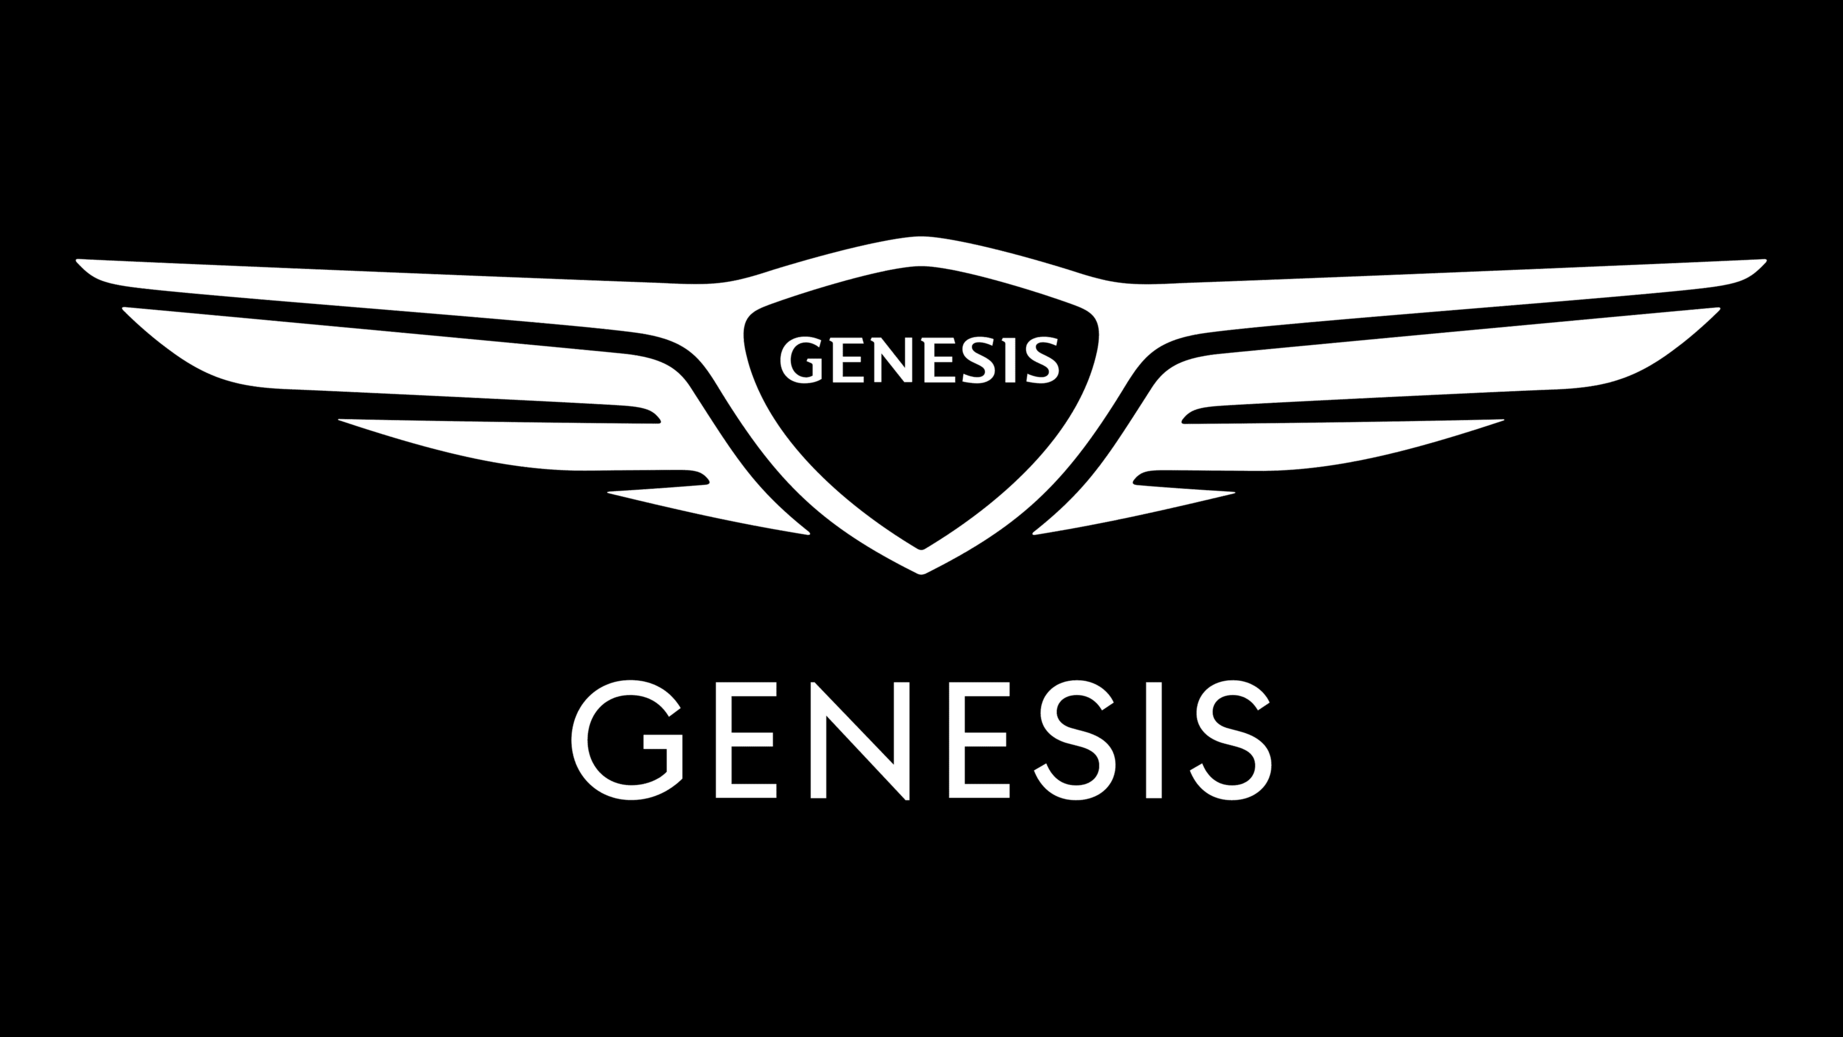 Genesis symbol